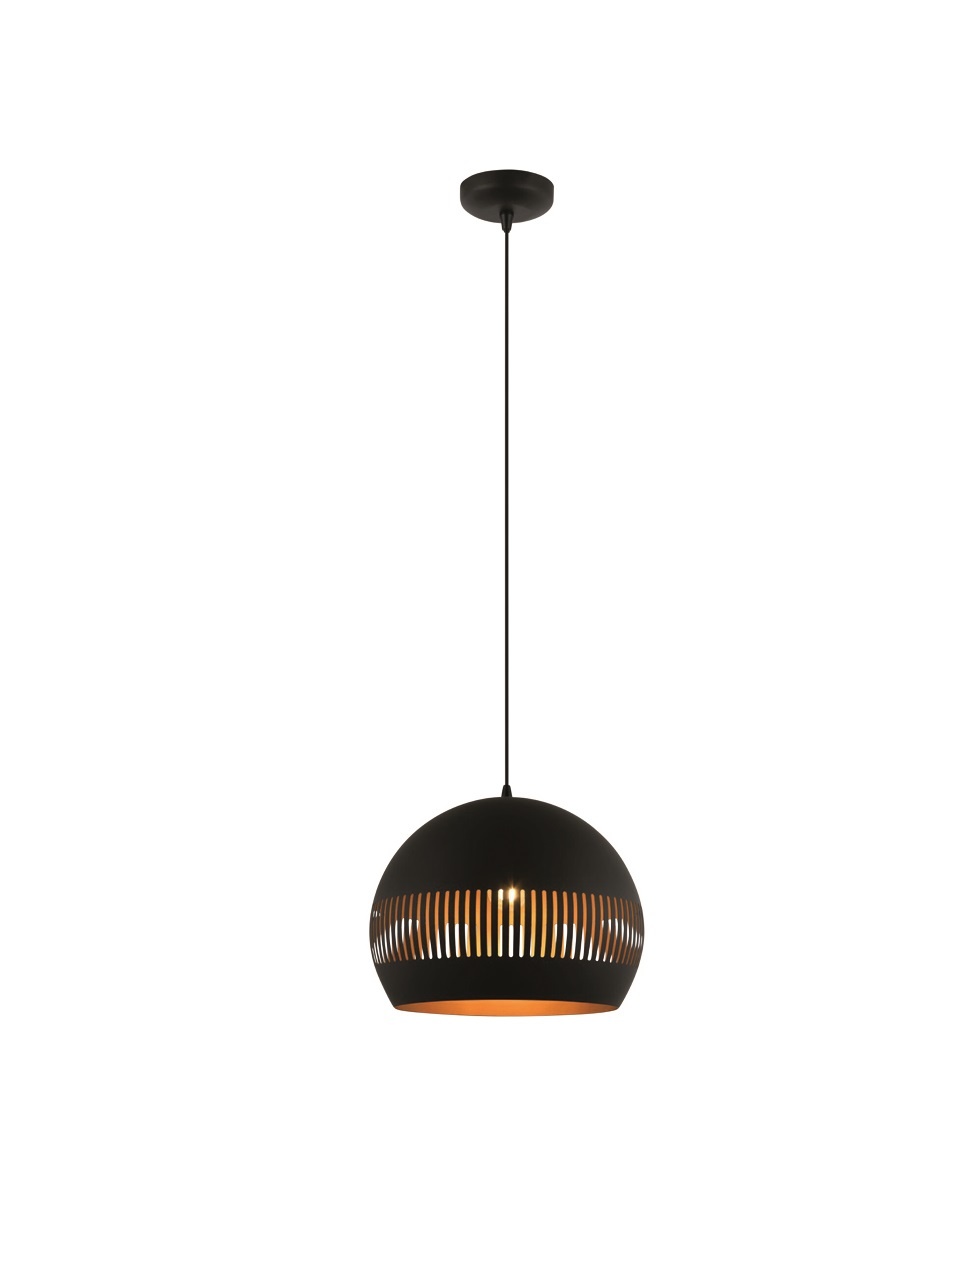 Hanglamp Globo Zwart - Goud Ø 30cm E27